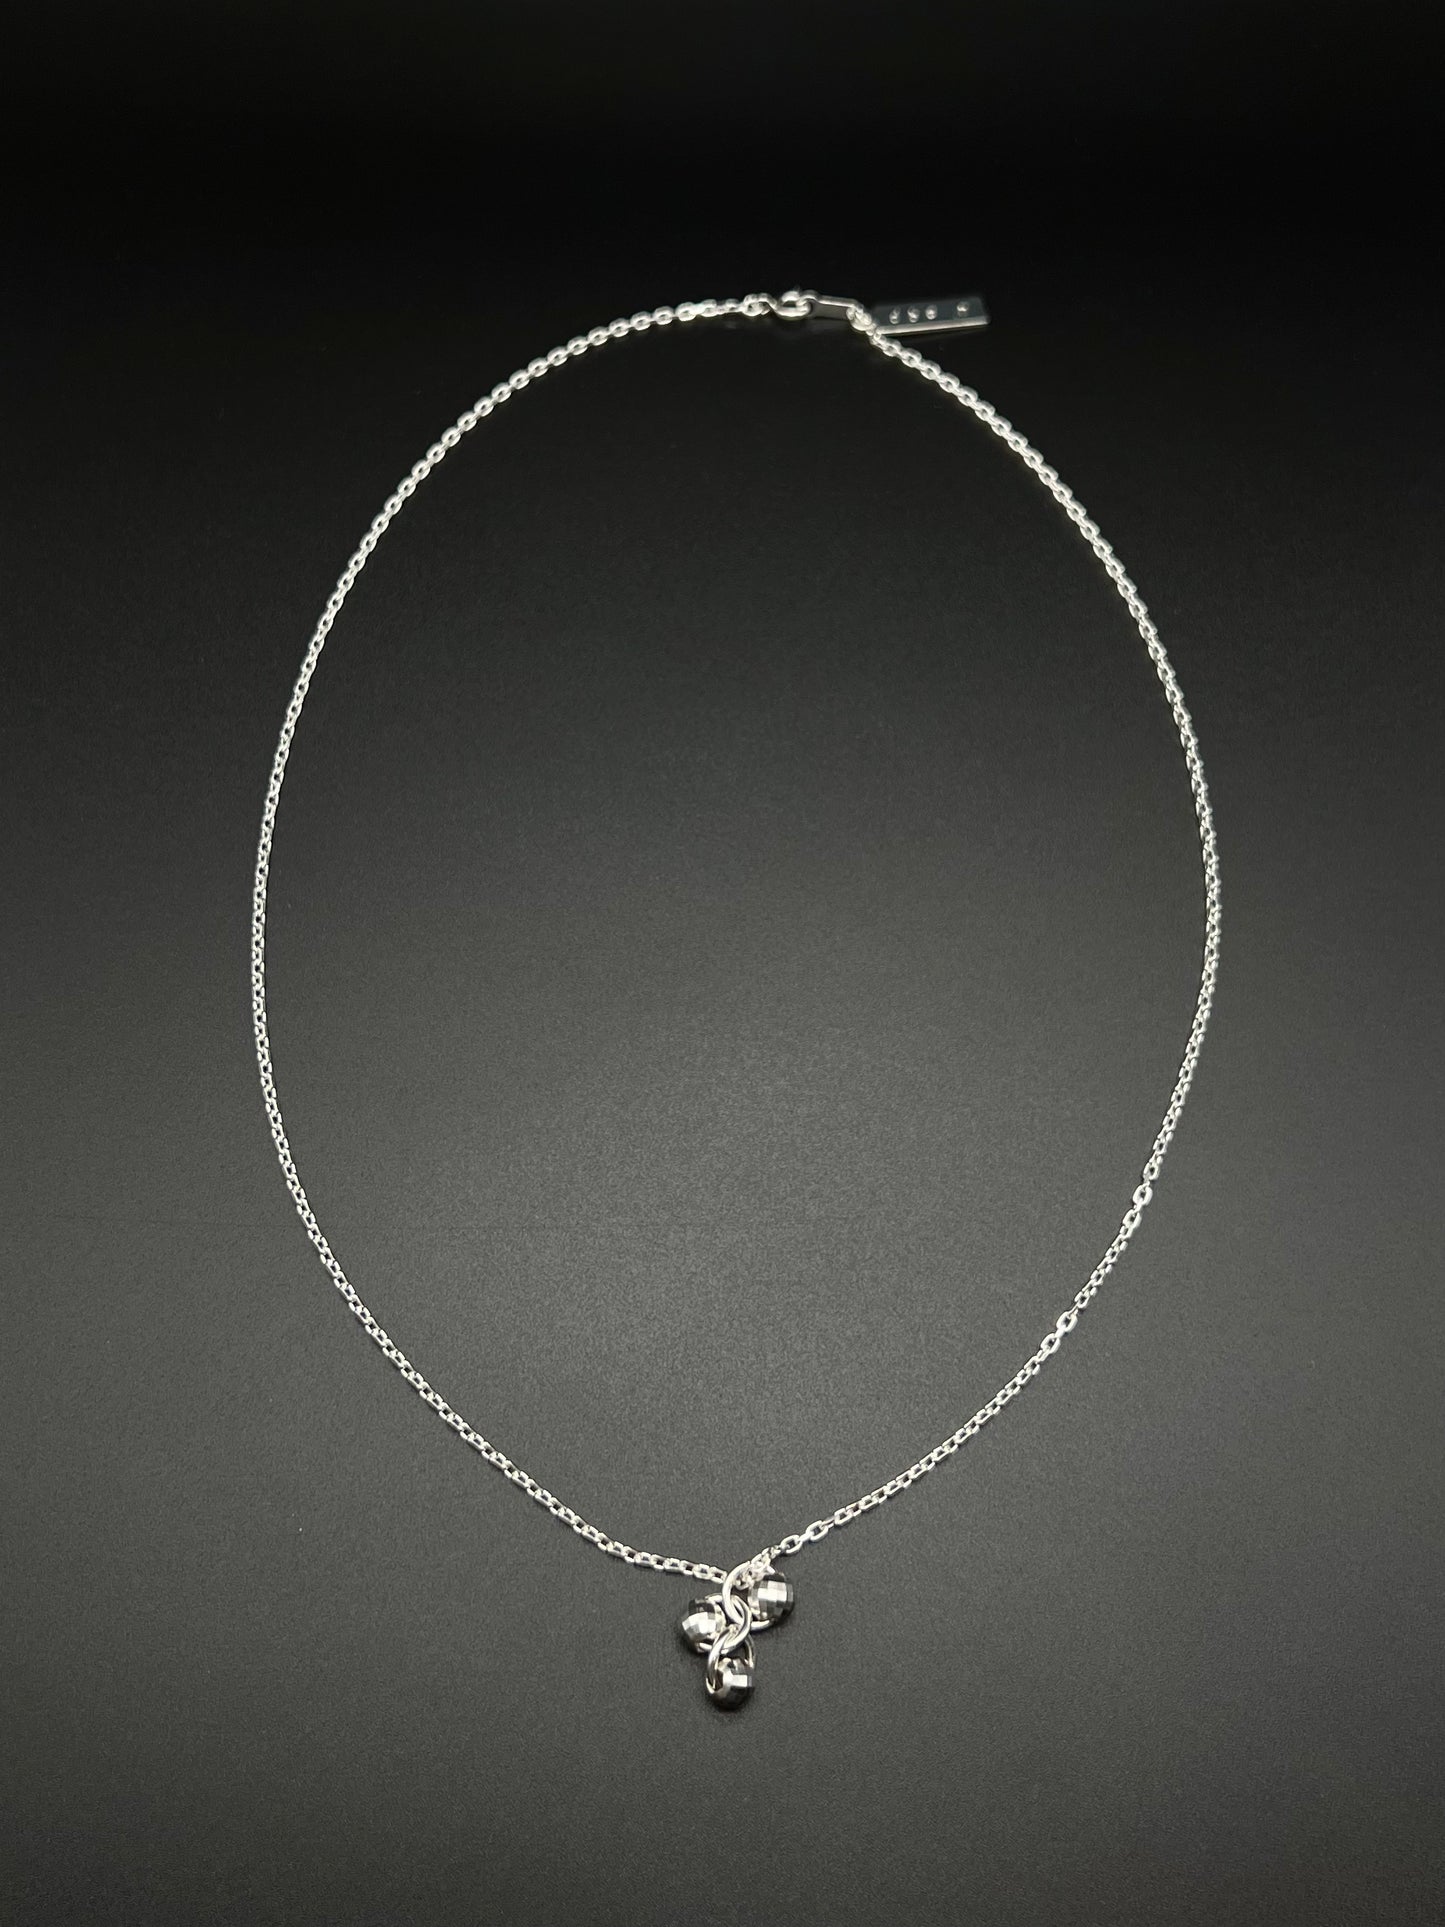 Mirror ball necklace -silver925